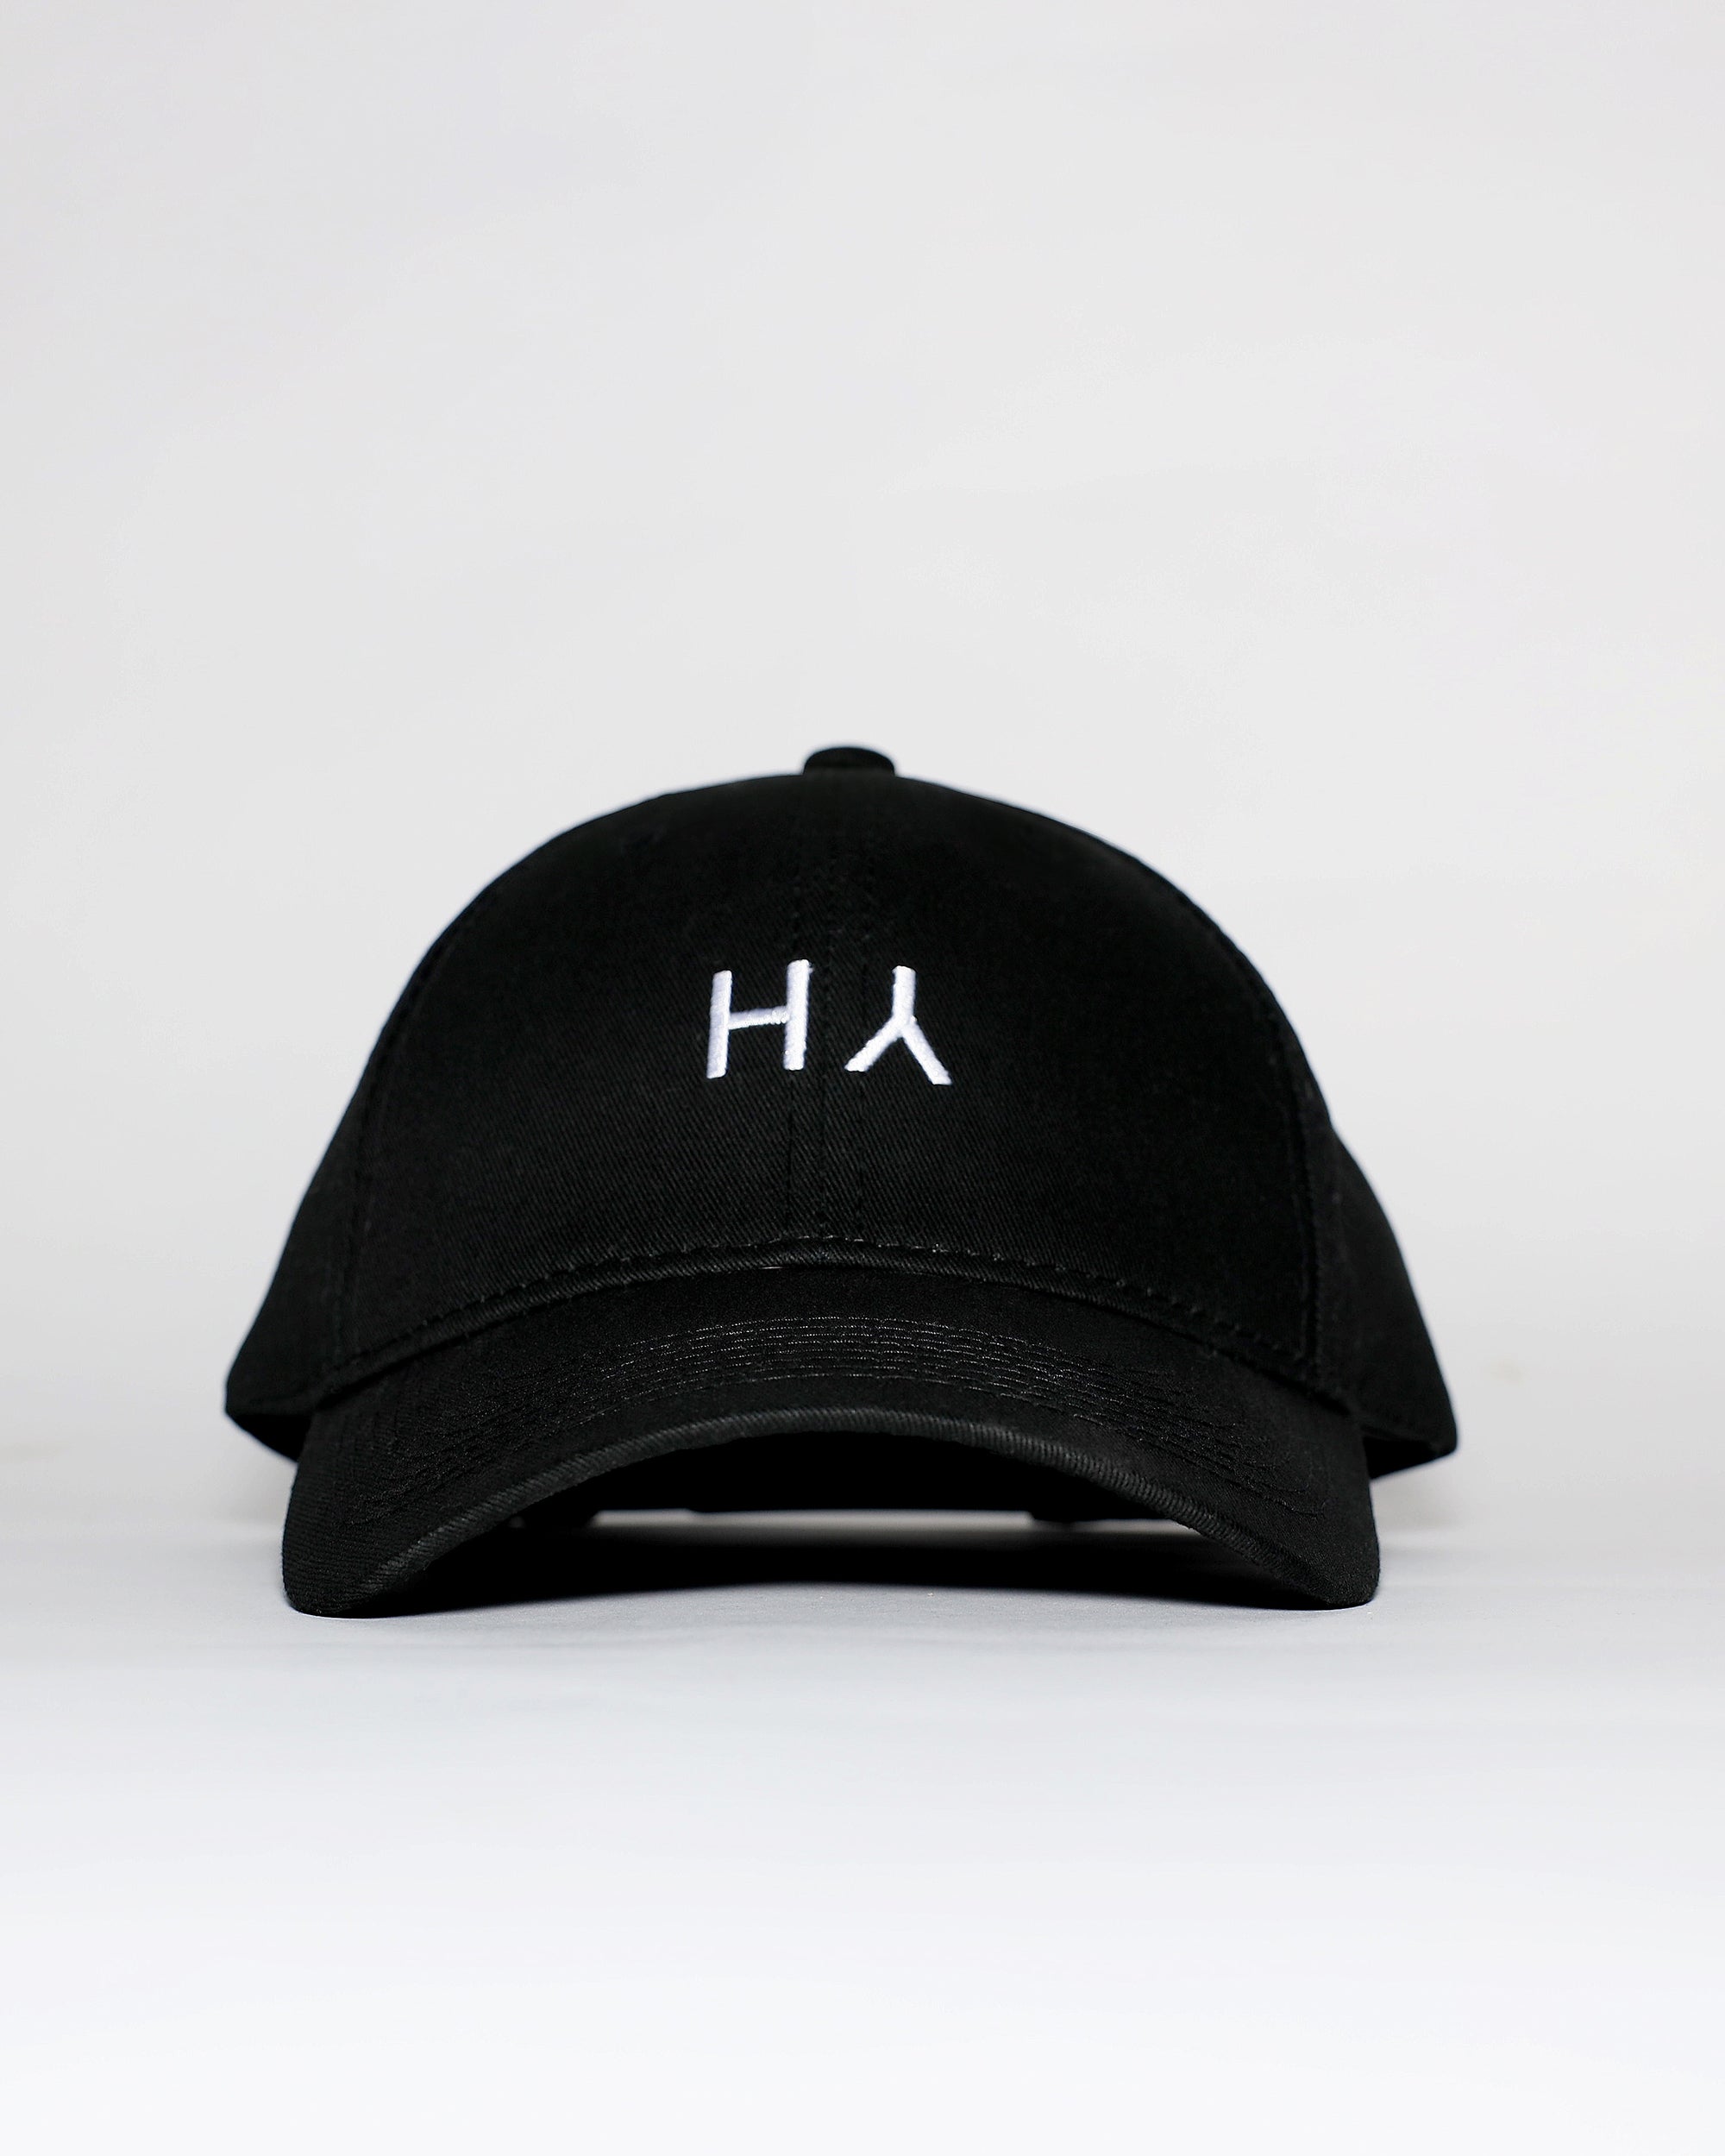 THE H.Y. CAP